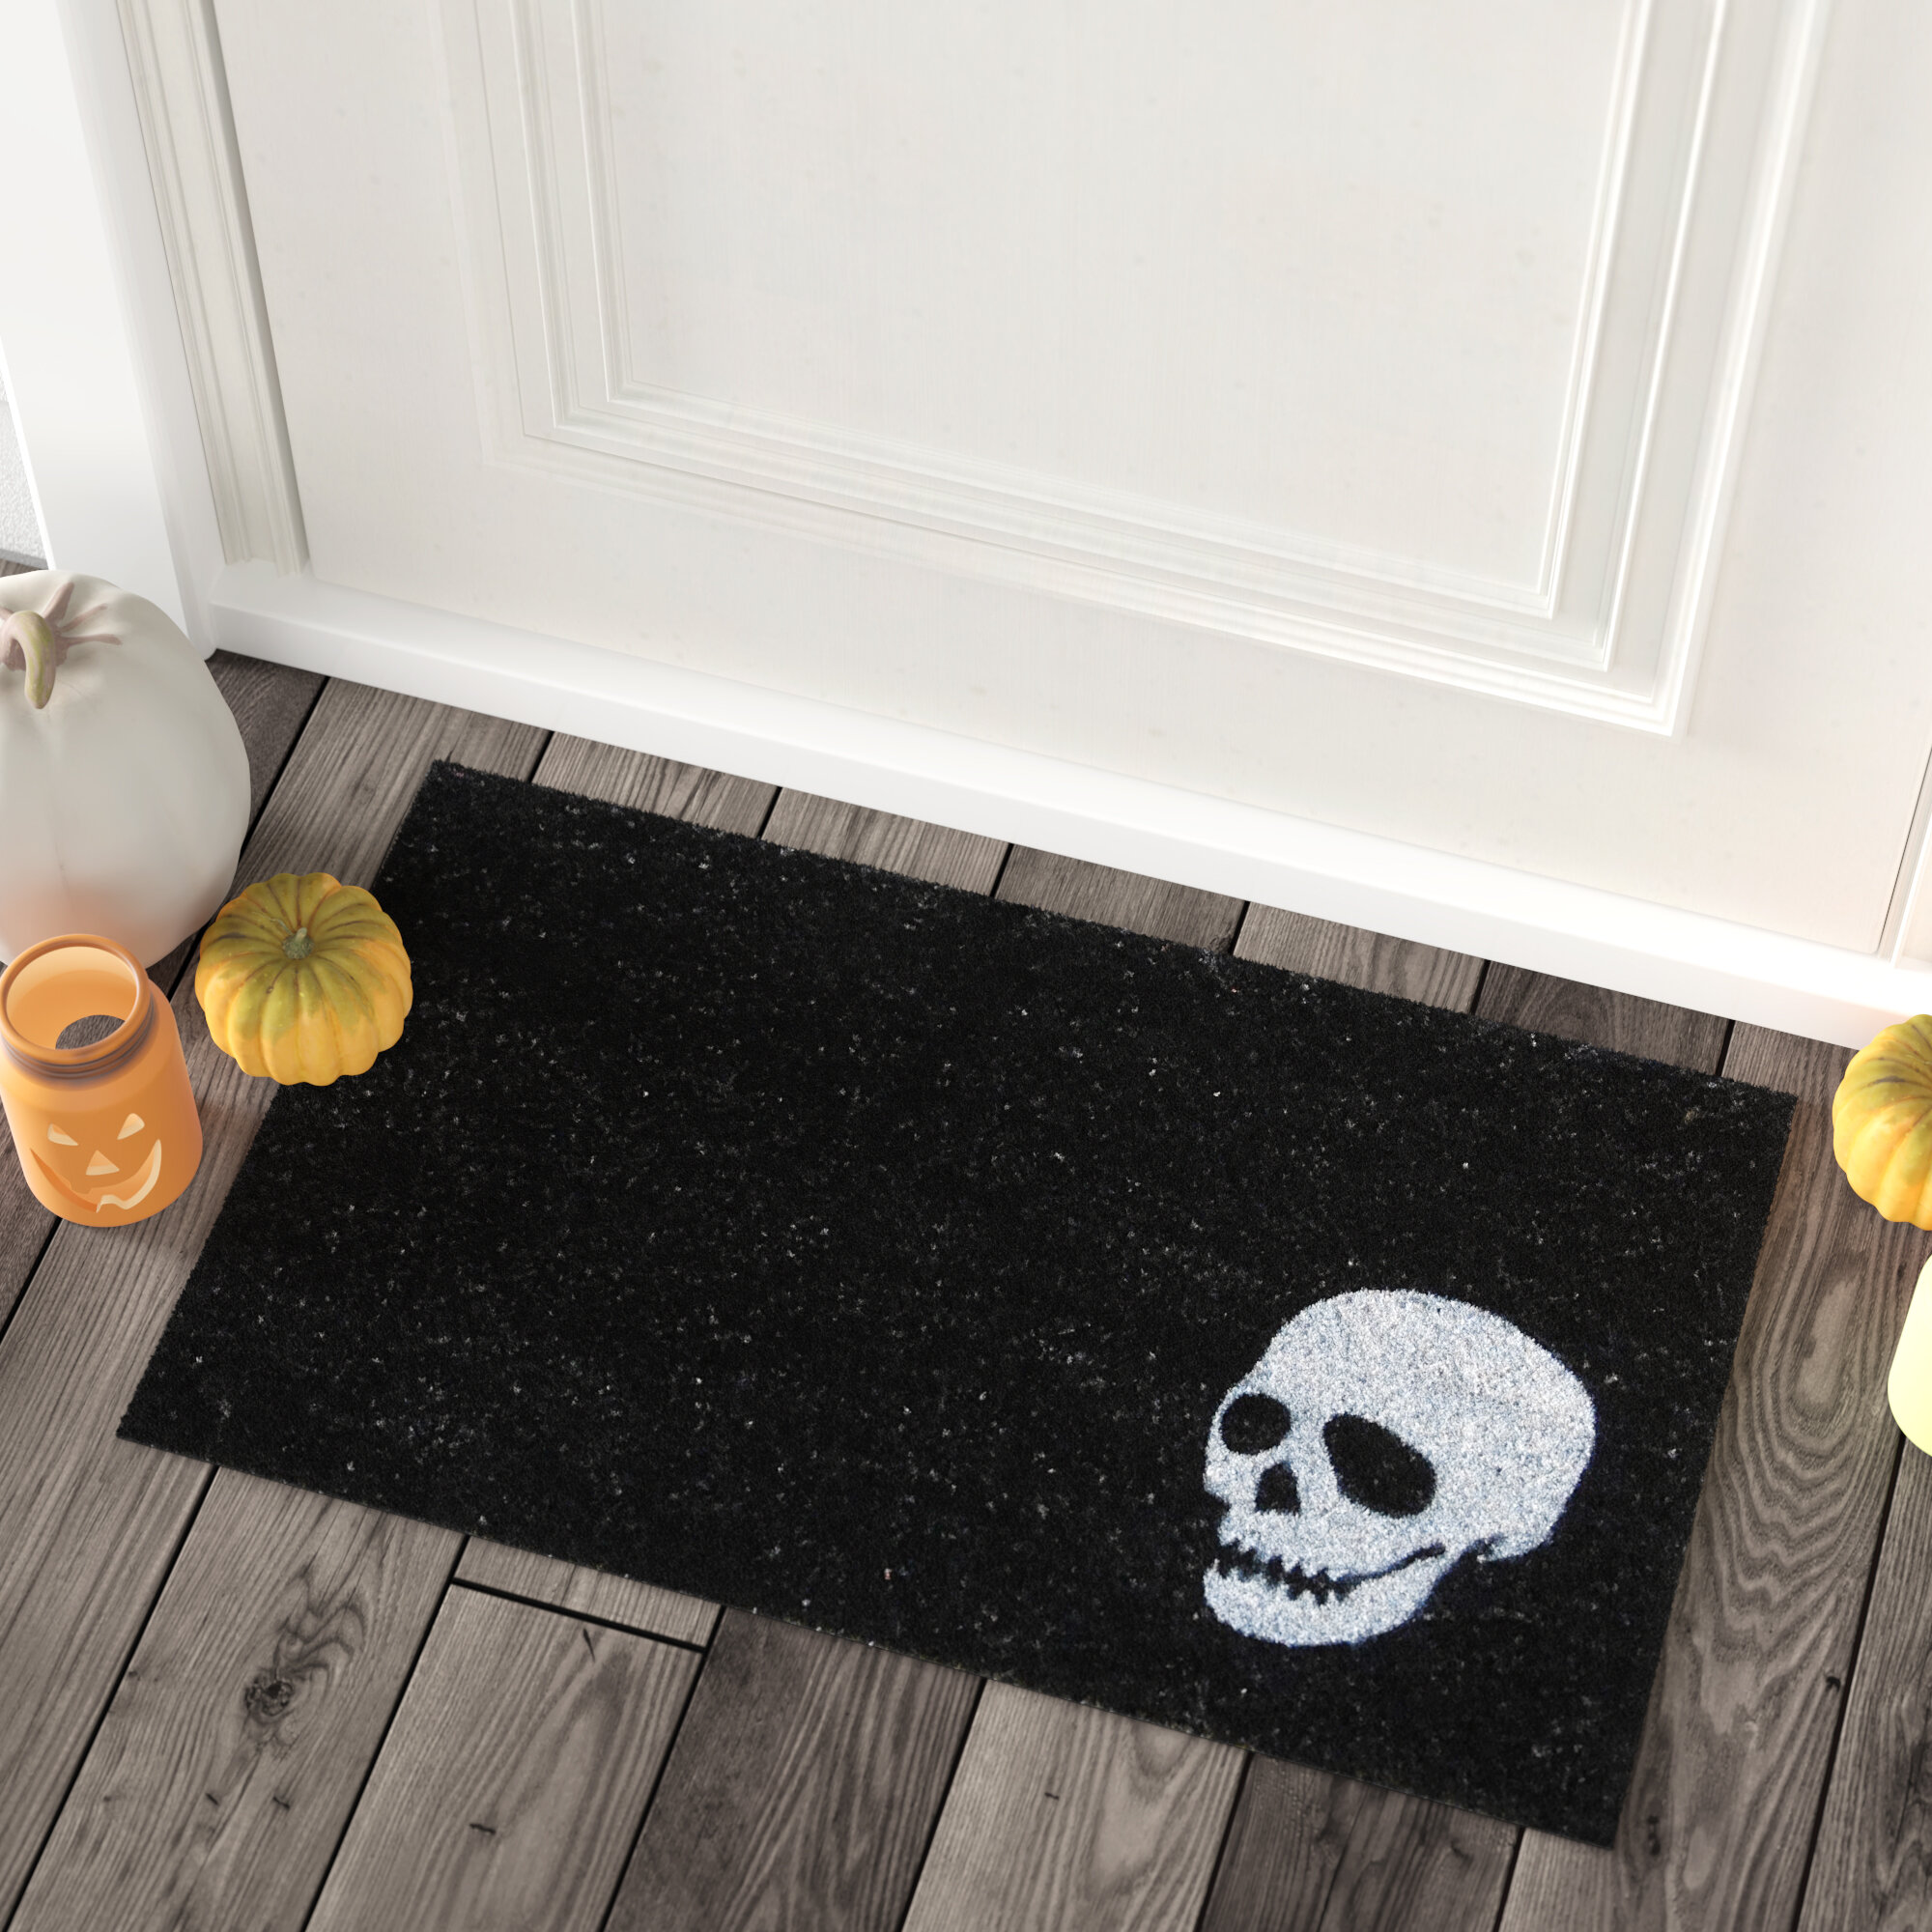 Pirate Flag Skull Bath Rugs Non-Slip Floor Outdoor Indoor Front Door Mat 16X24" 